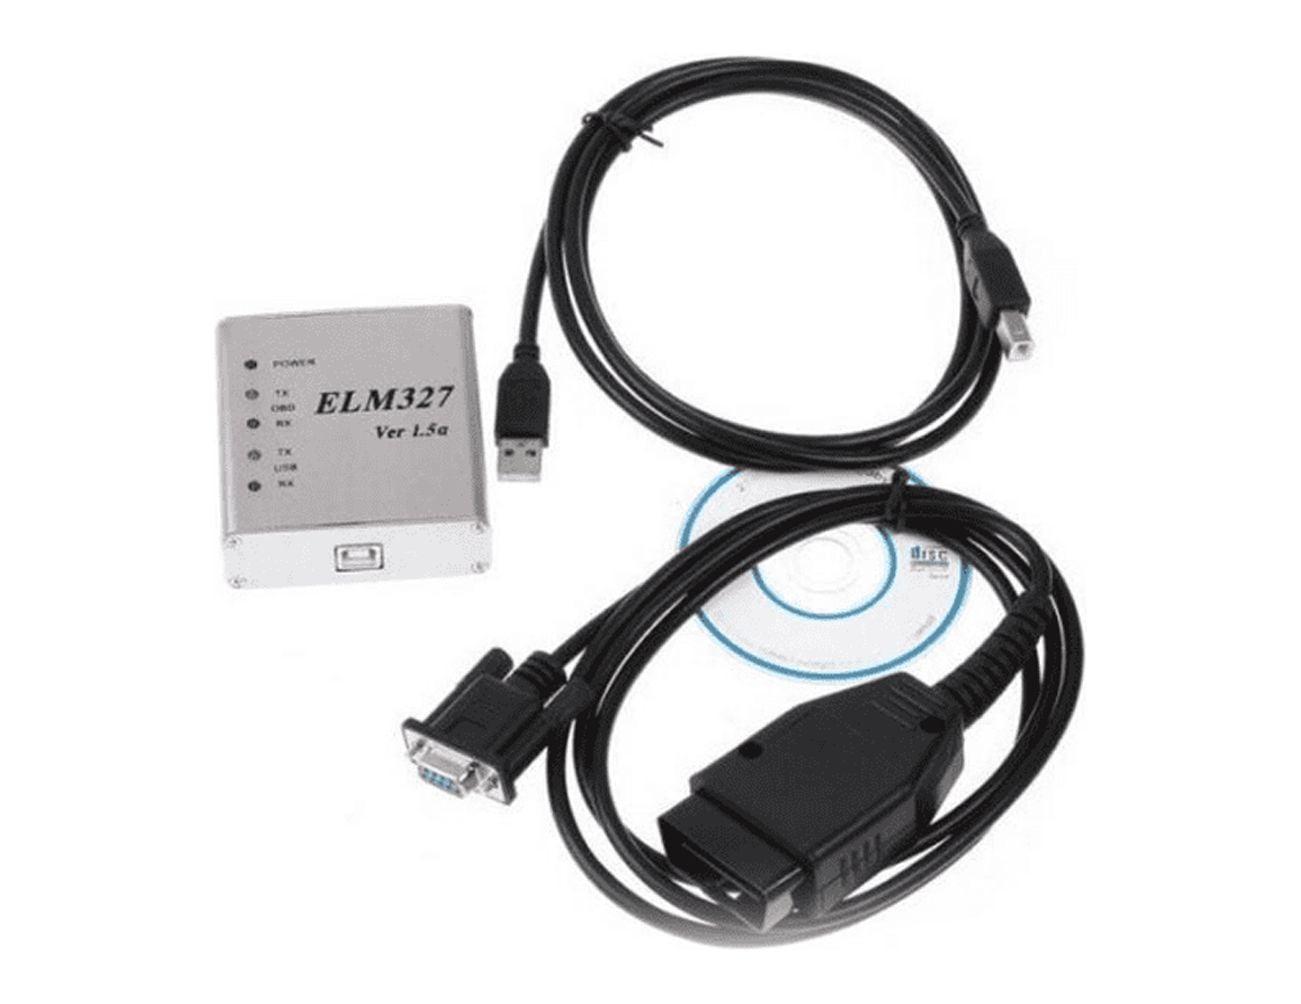  SPORWAY ENET OBD2 Câble : Câble adaptateur Ethernet avec CD  pour BMW, V50.2 V50.3 Câble d'extension RJ45 Adaptateur pour BMW Série F,  les nouveaux modèles 1, 3, 5, 7 GT X3